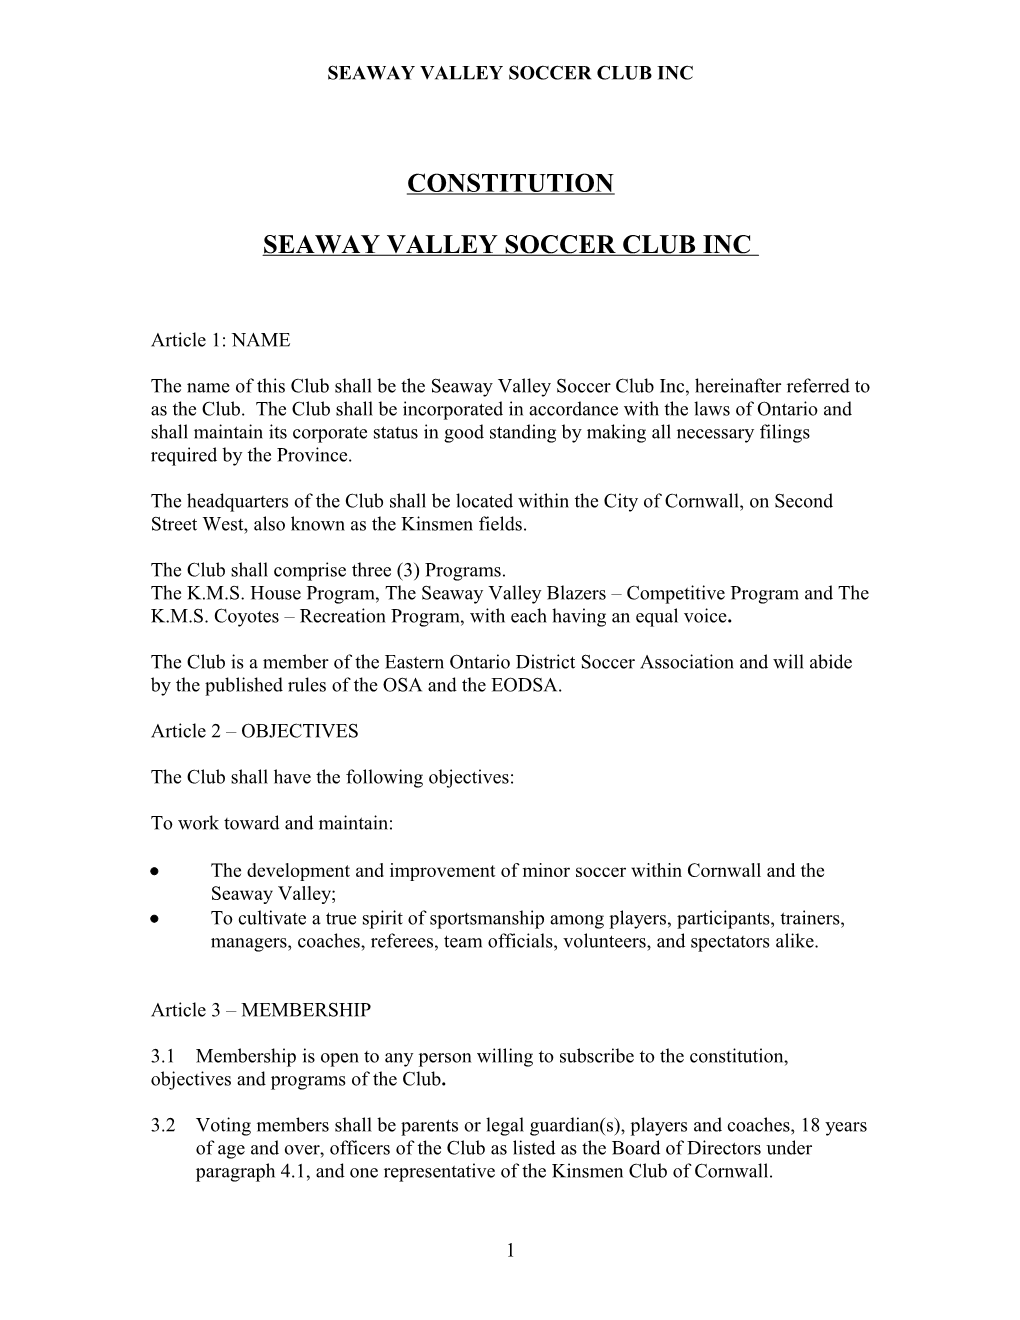 PROPOSED INTERIM CONSTITUTION - Effective November 28, 2006